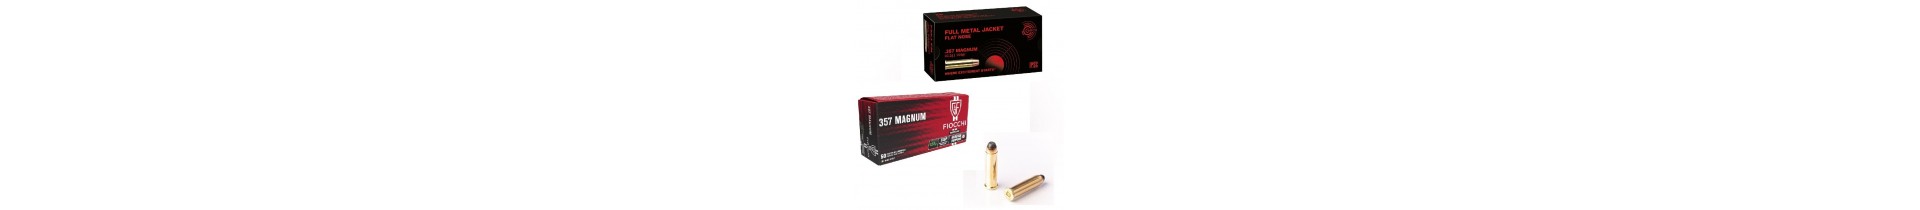 Retrouvez les munitions de calibre 38 / 357 magnum sur www.tactirshop.fr